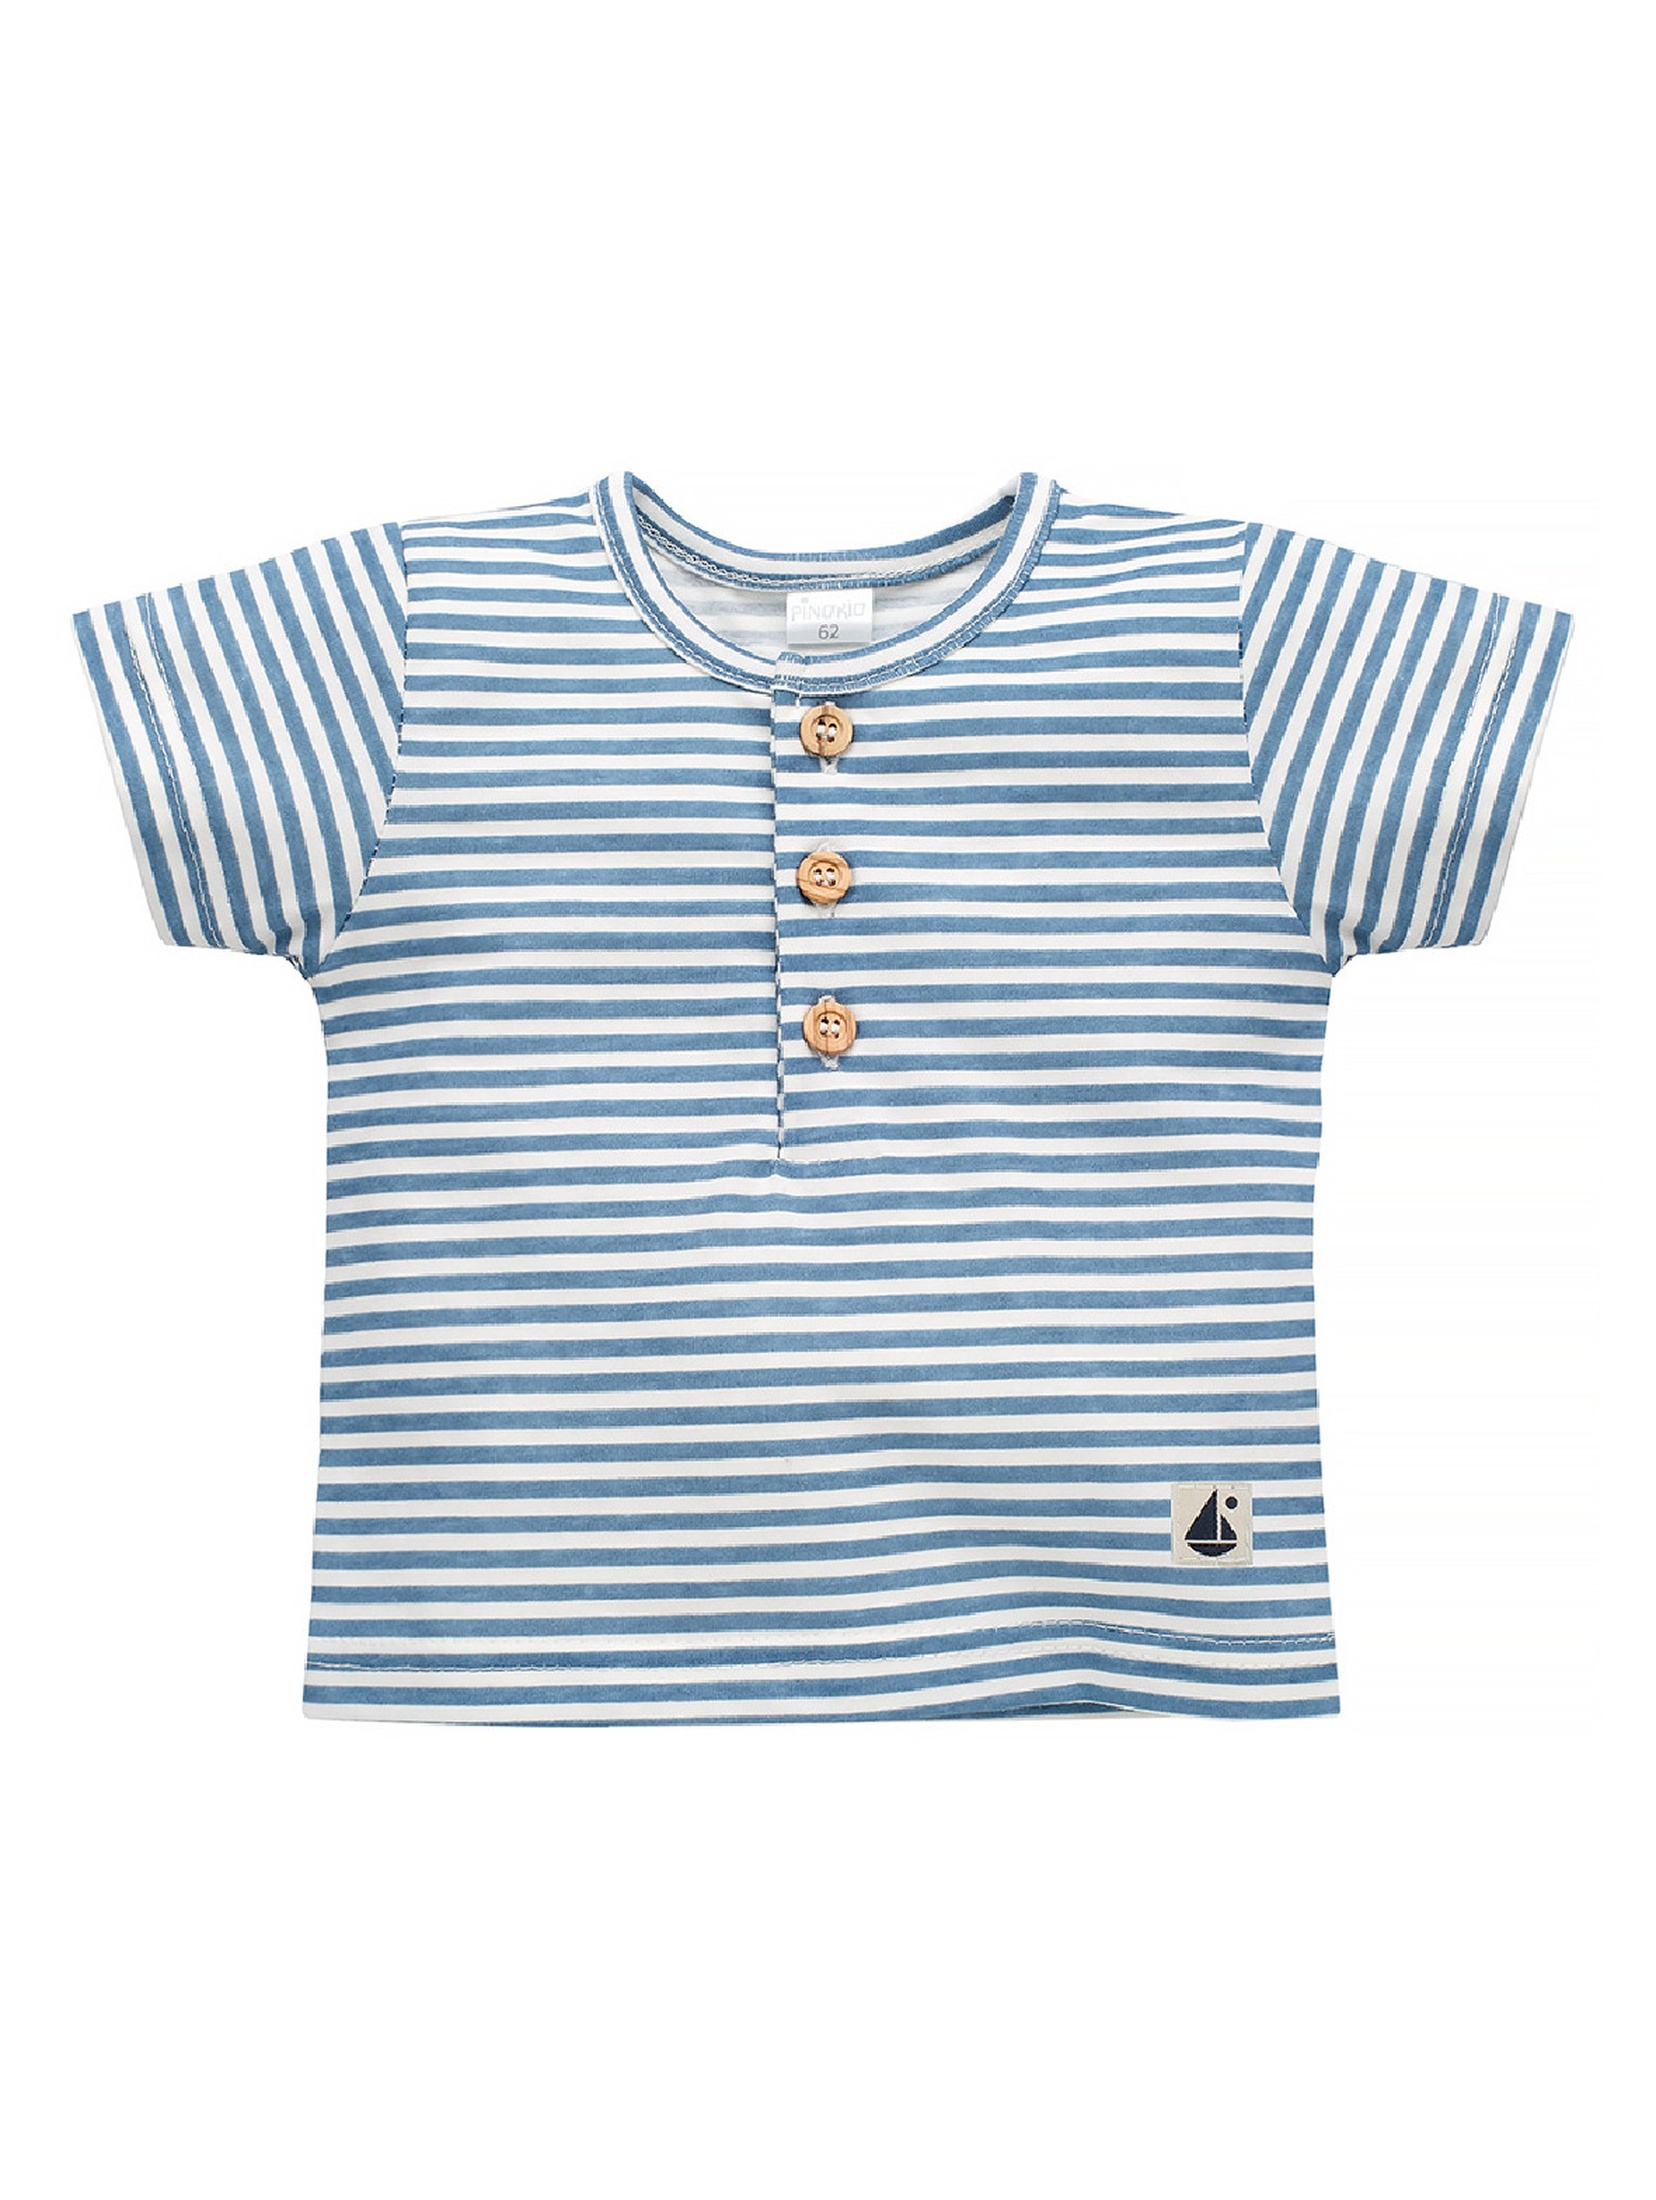 Bawełniany t-shirt dla niemowlaka Sailor ecru